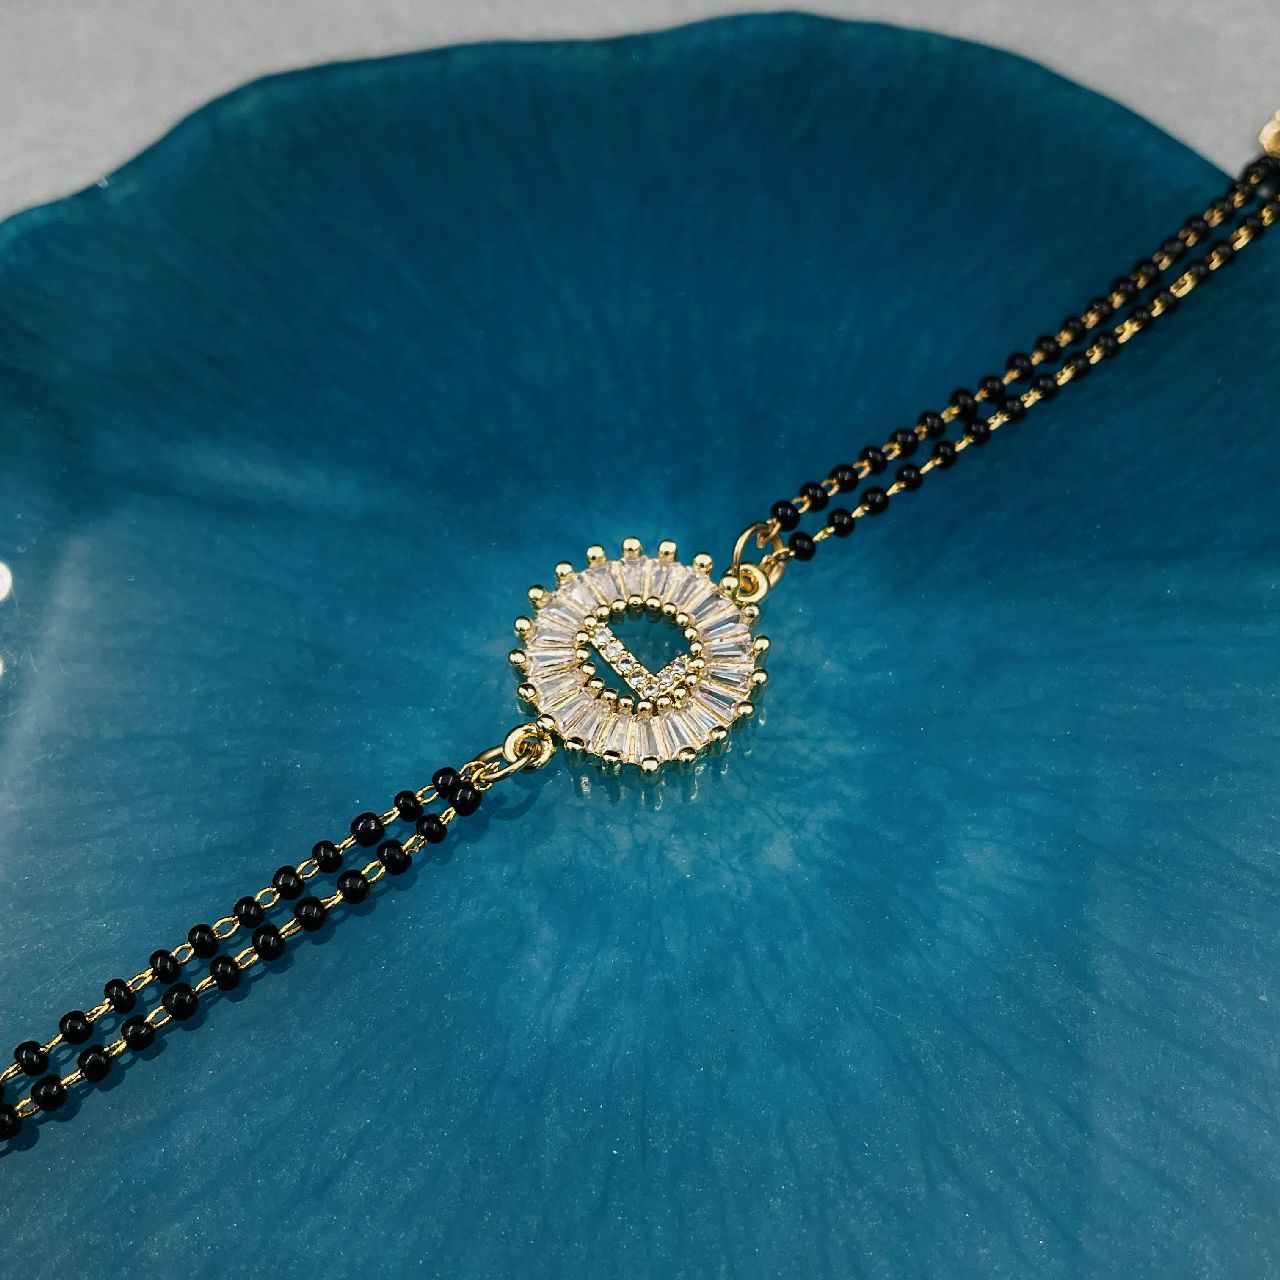 Silver Vati Bracelet Mangalsutra, Bracelet Mangalsutra, Marathi Jewellery,  Silver Bracelet, Indian Jewelry,daily Wear, Gift for Her - Etsy